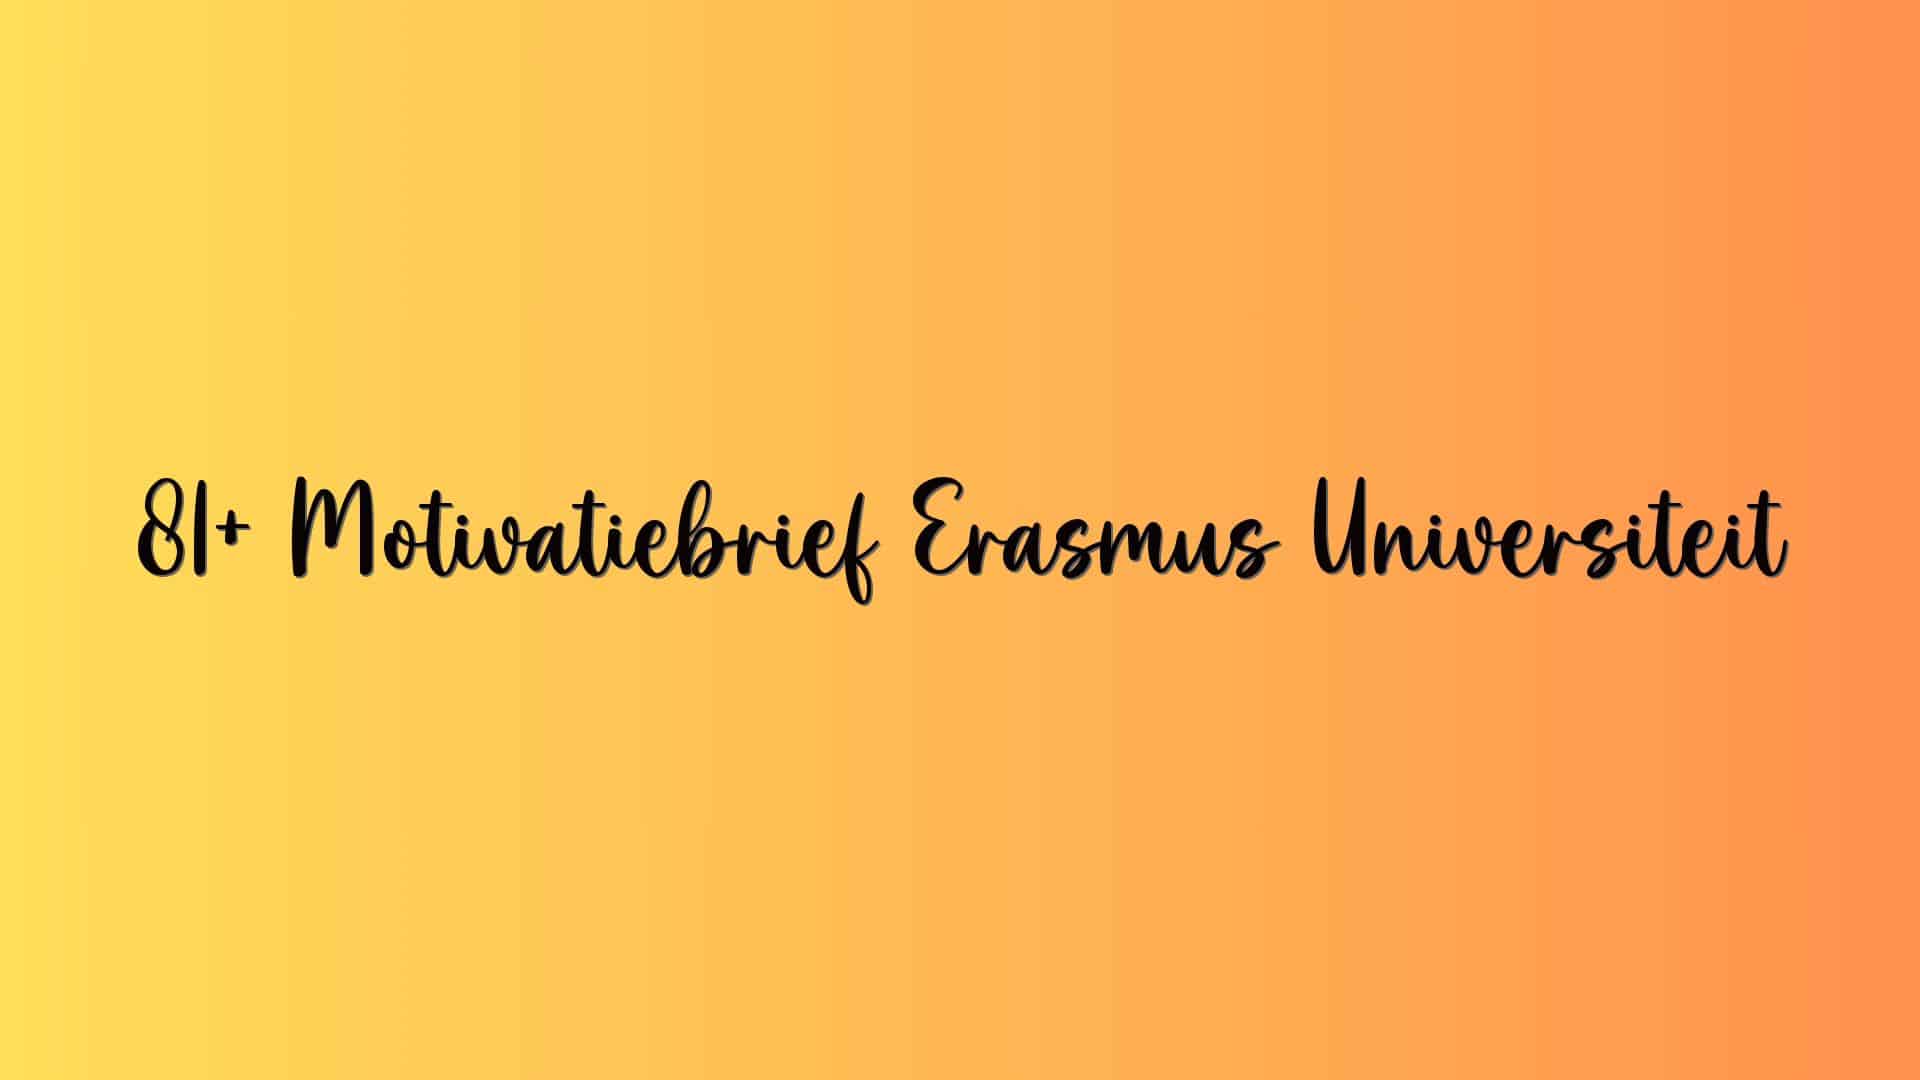 81+ Motivatiebrief Erasmus Universiteit